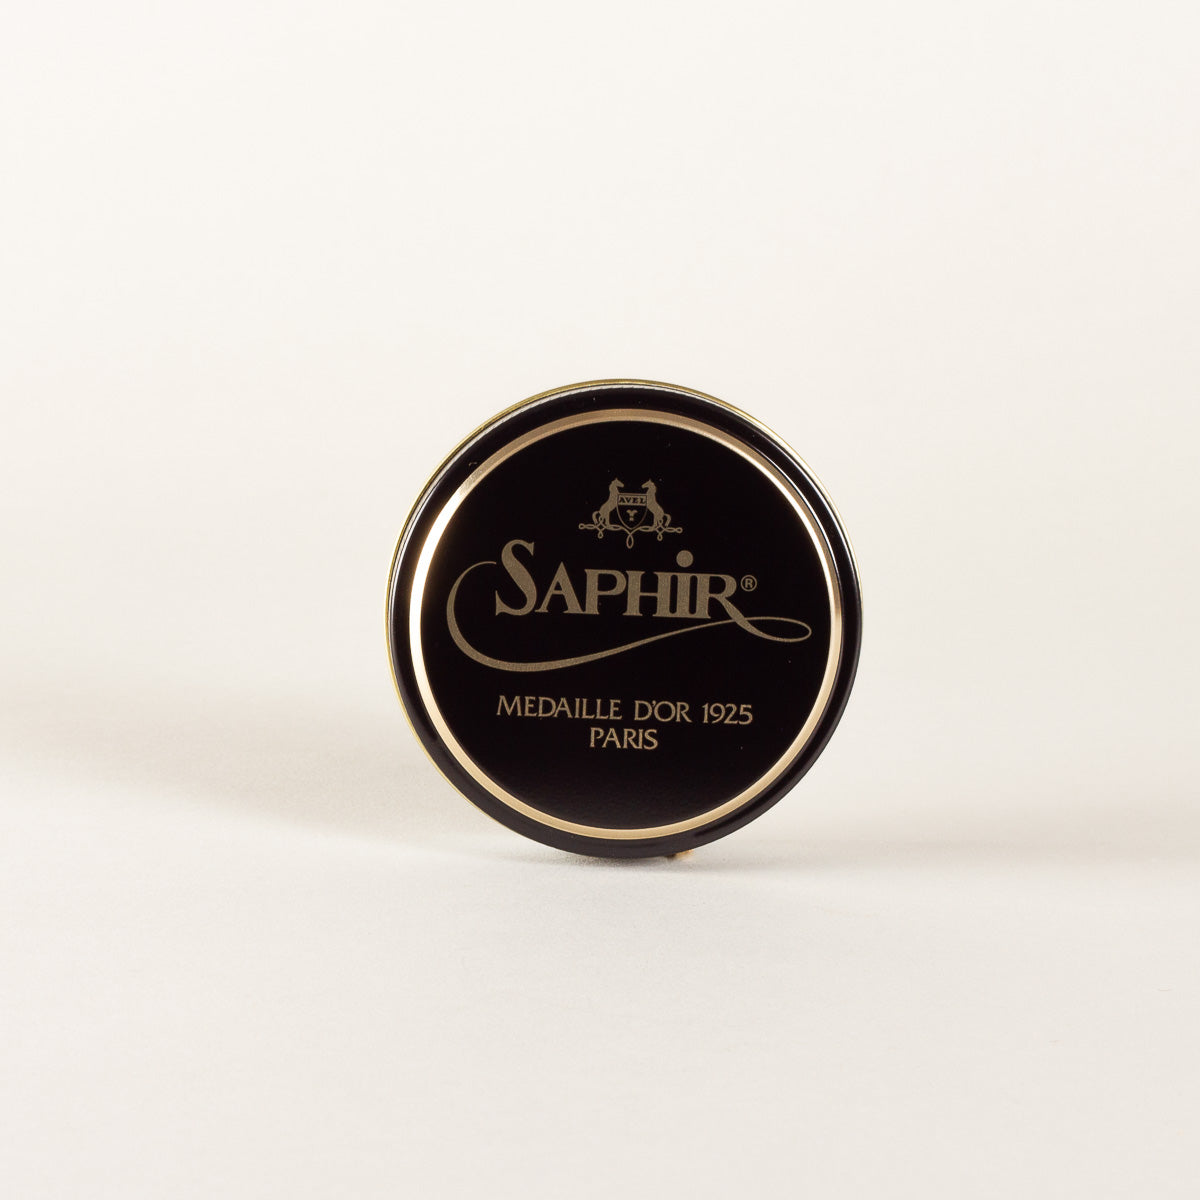 Saphir Medaille D'Or Wax Polish 50mL - Light Brown :: Maxton Men